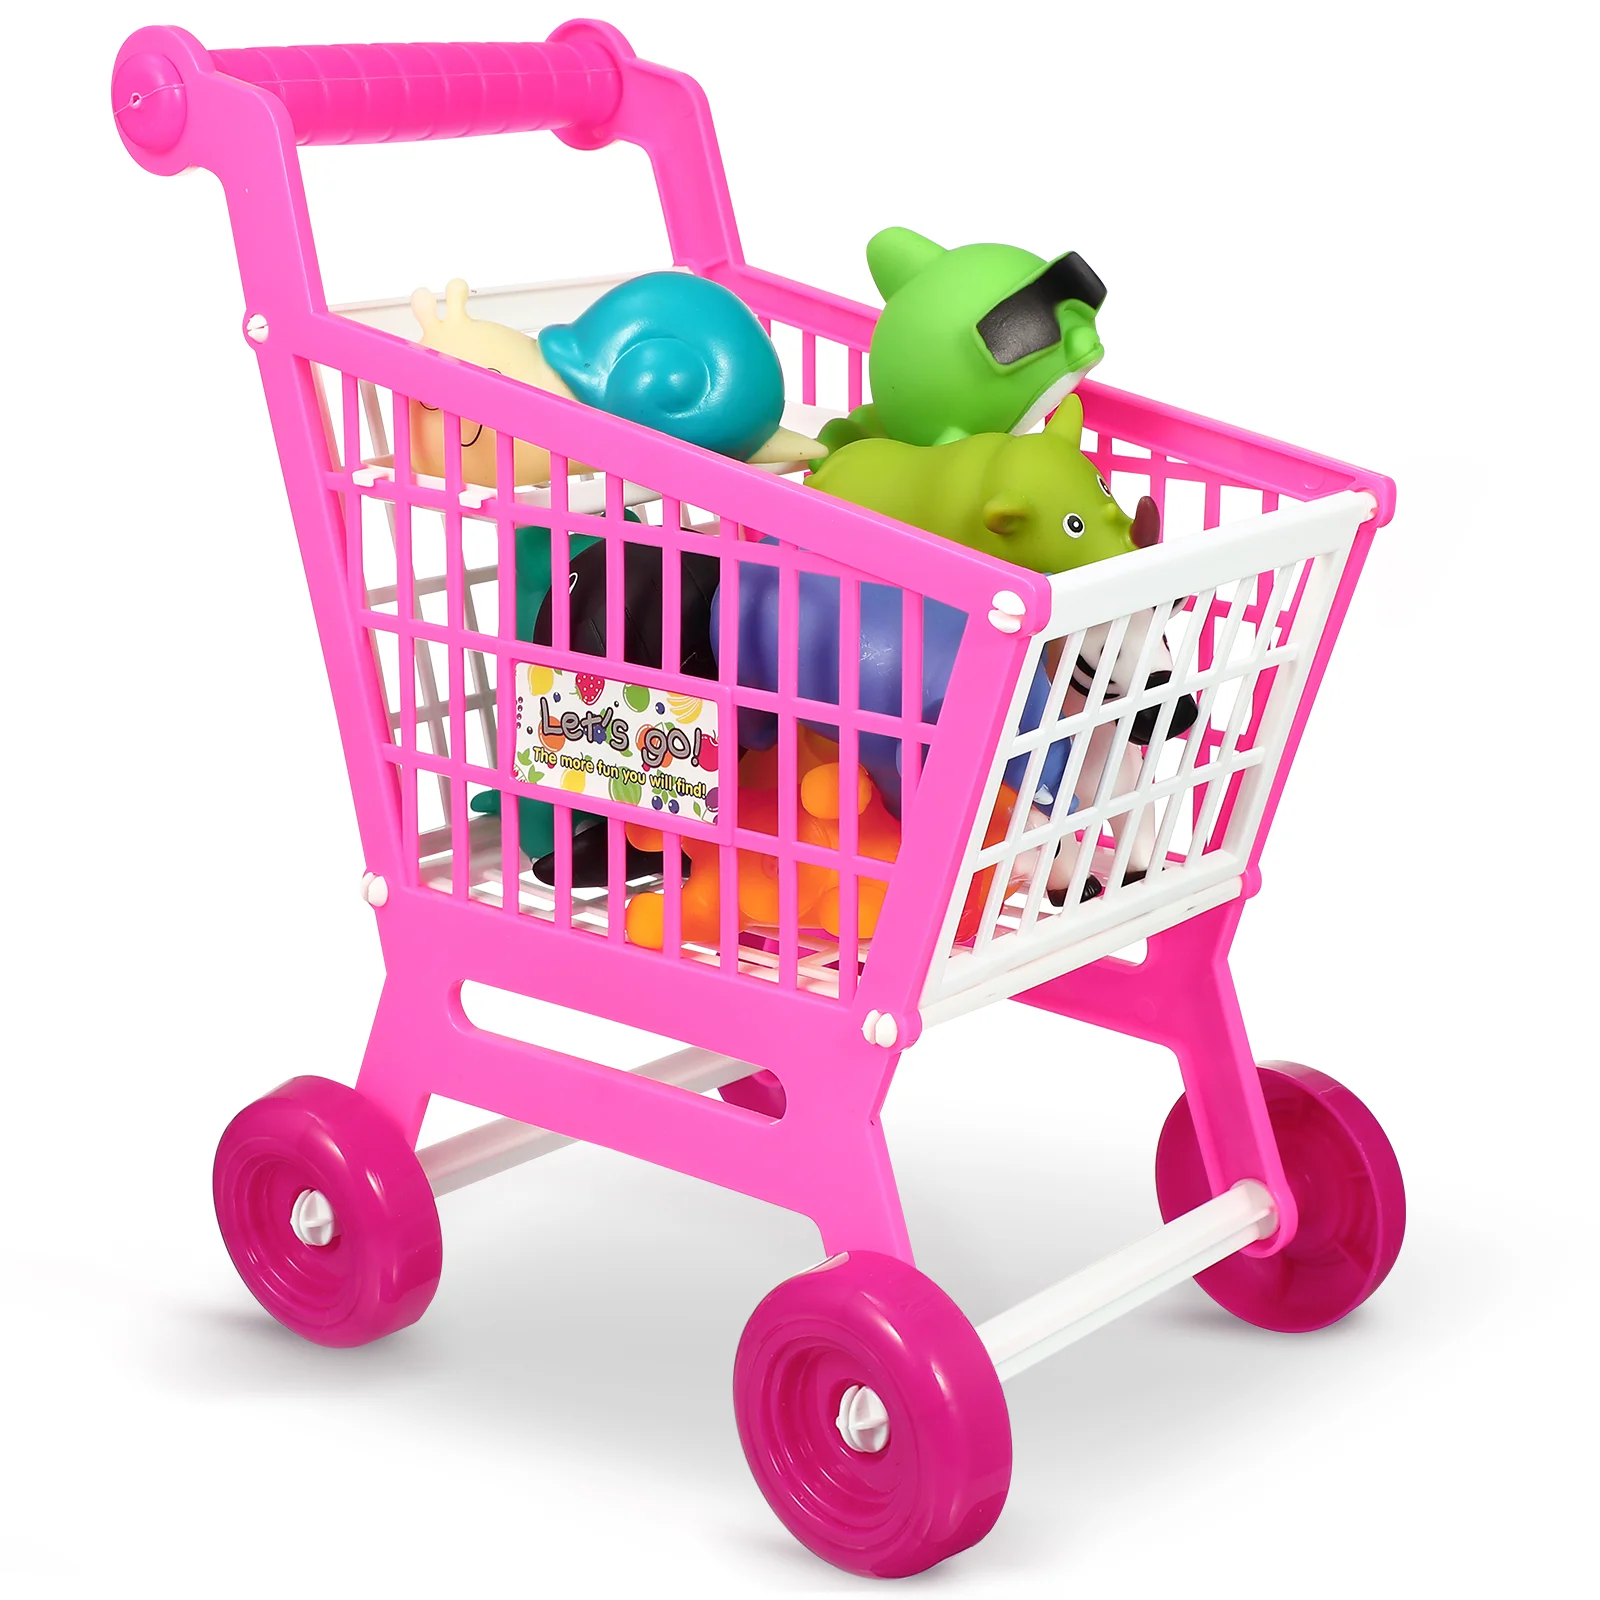 

Имитация корзины для покупок детские тележки пластиковые мини продуктовые игрушки супермаркет малыш грузовик Дети